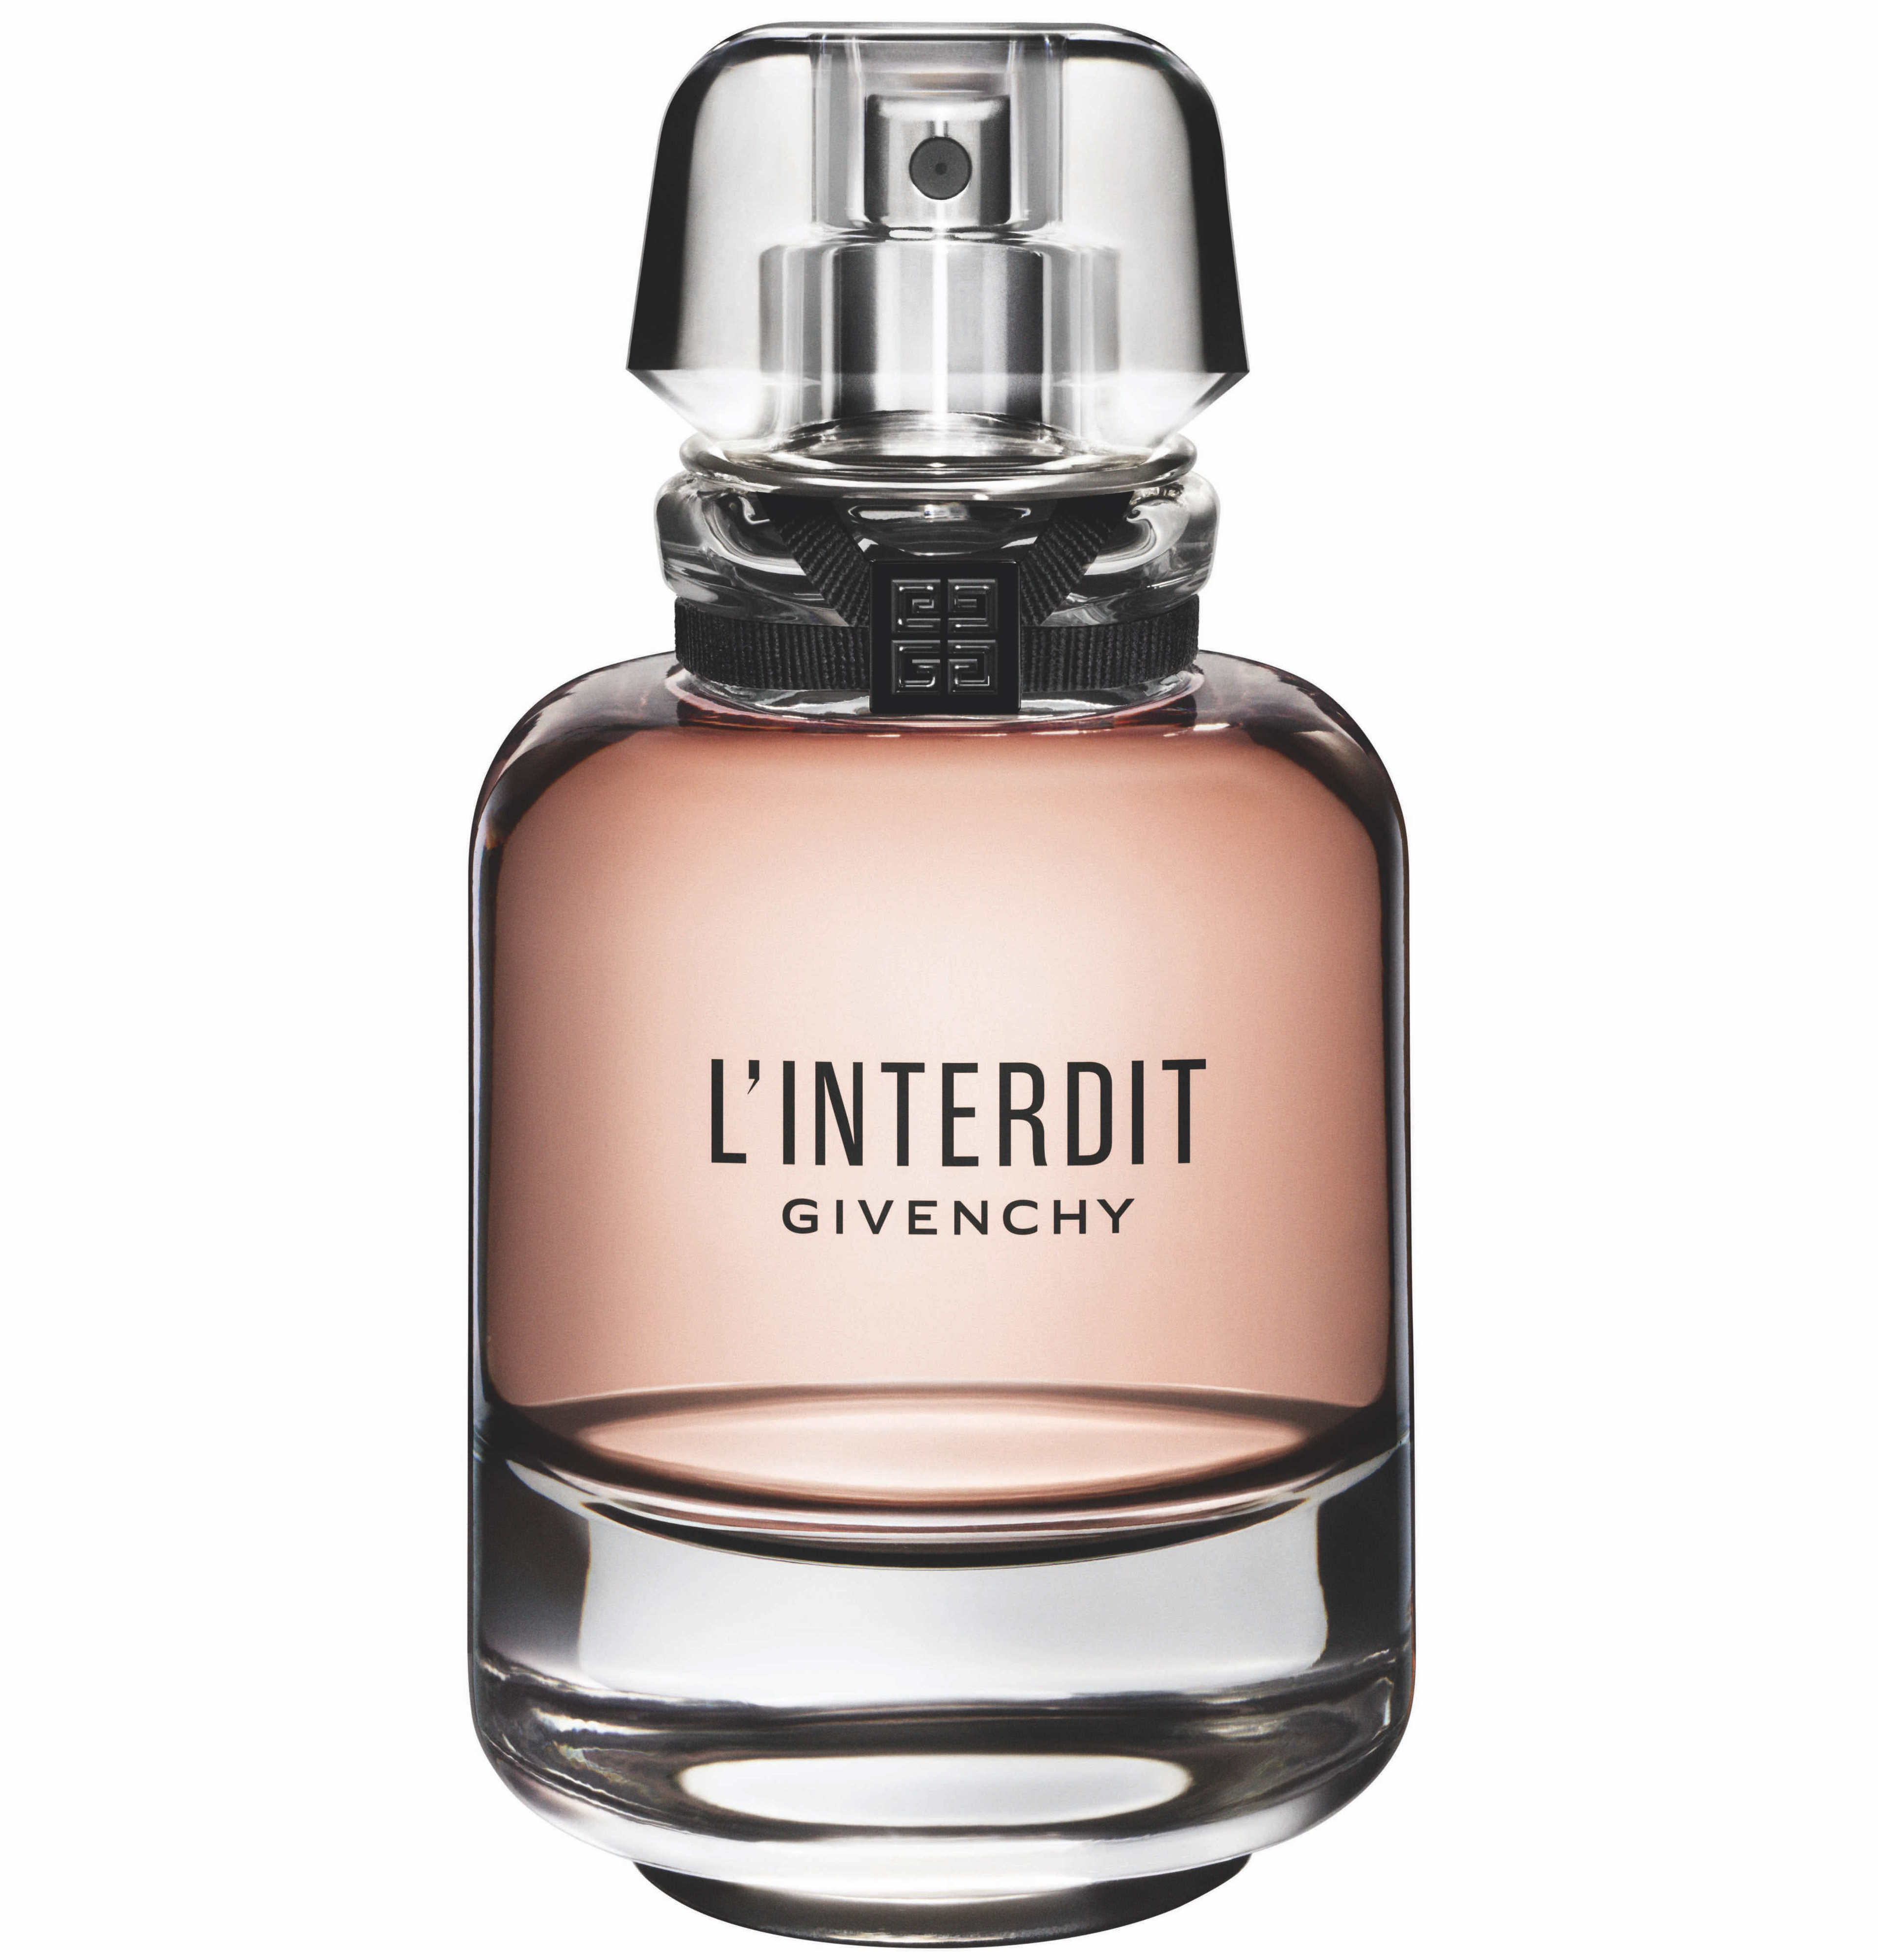 Tudo sobre a nova fragrância Givenchy: L'Interdit - Outras coisas - Miranda